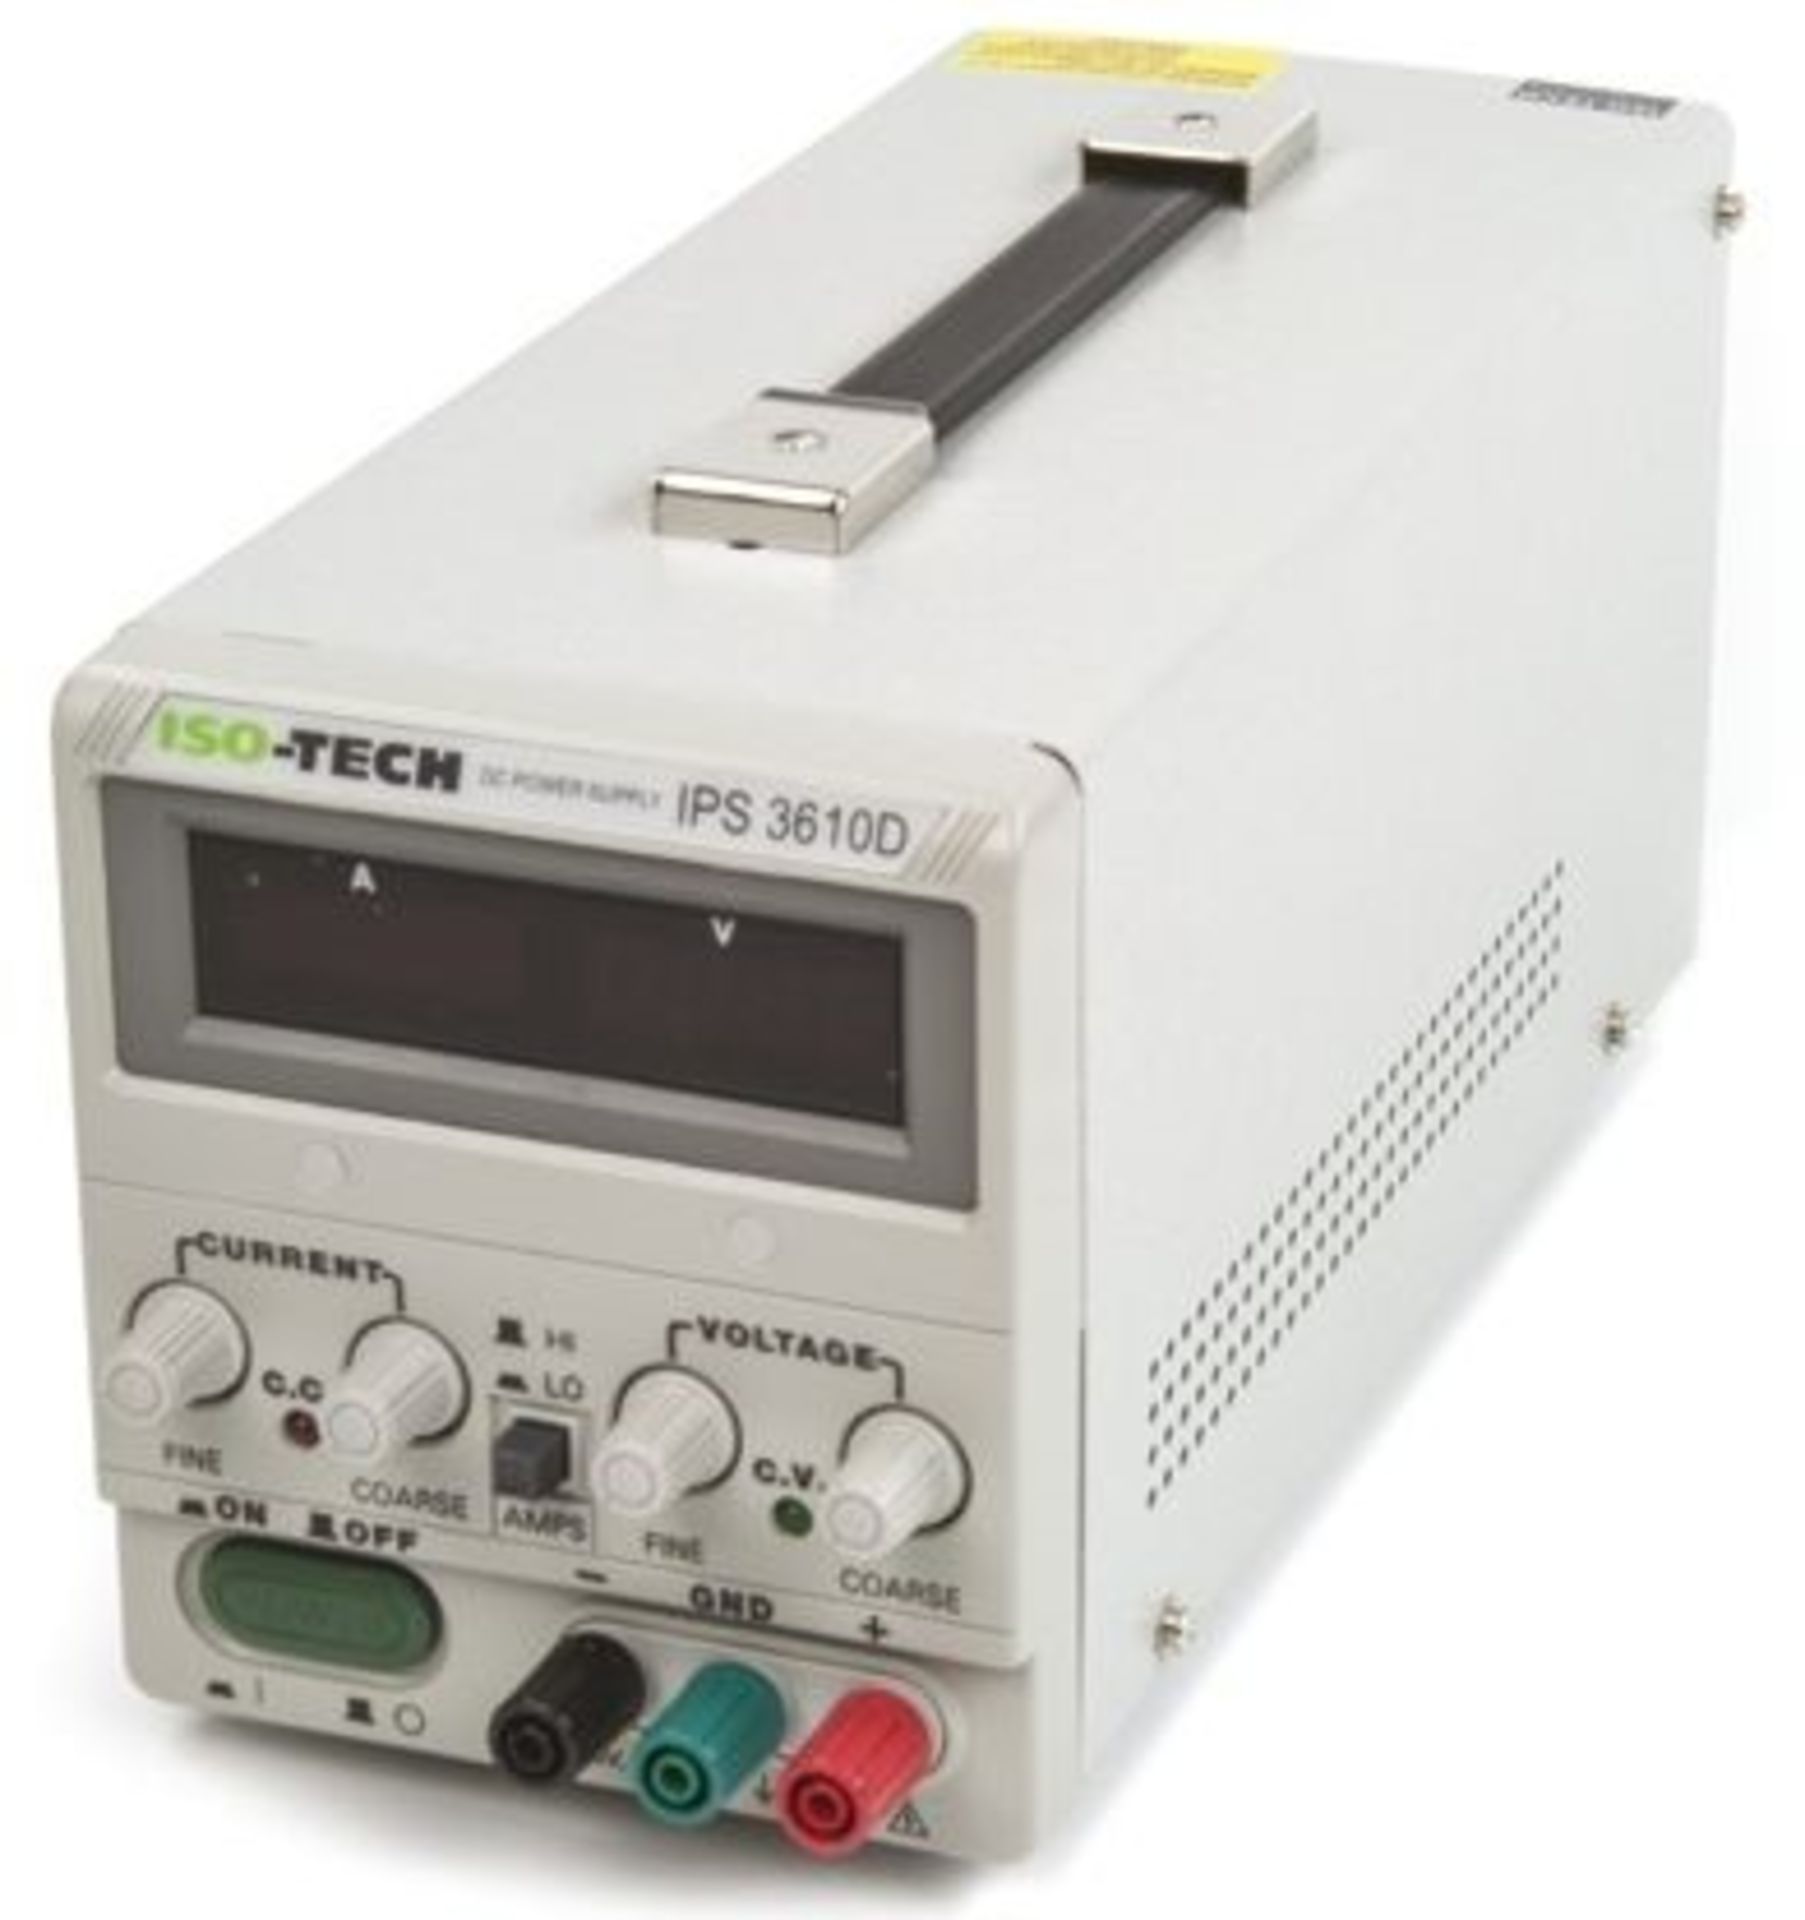 ISO-TECH IPS-3610D Digital Bench Power Supply, 1 Output 0-36V 0-10A 500W - Bild 2 aus 3